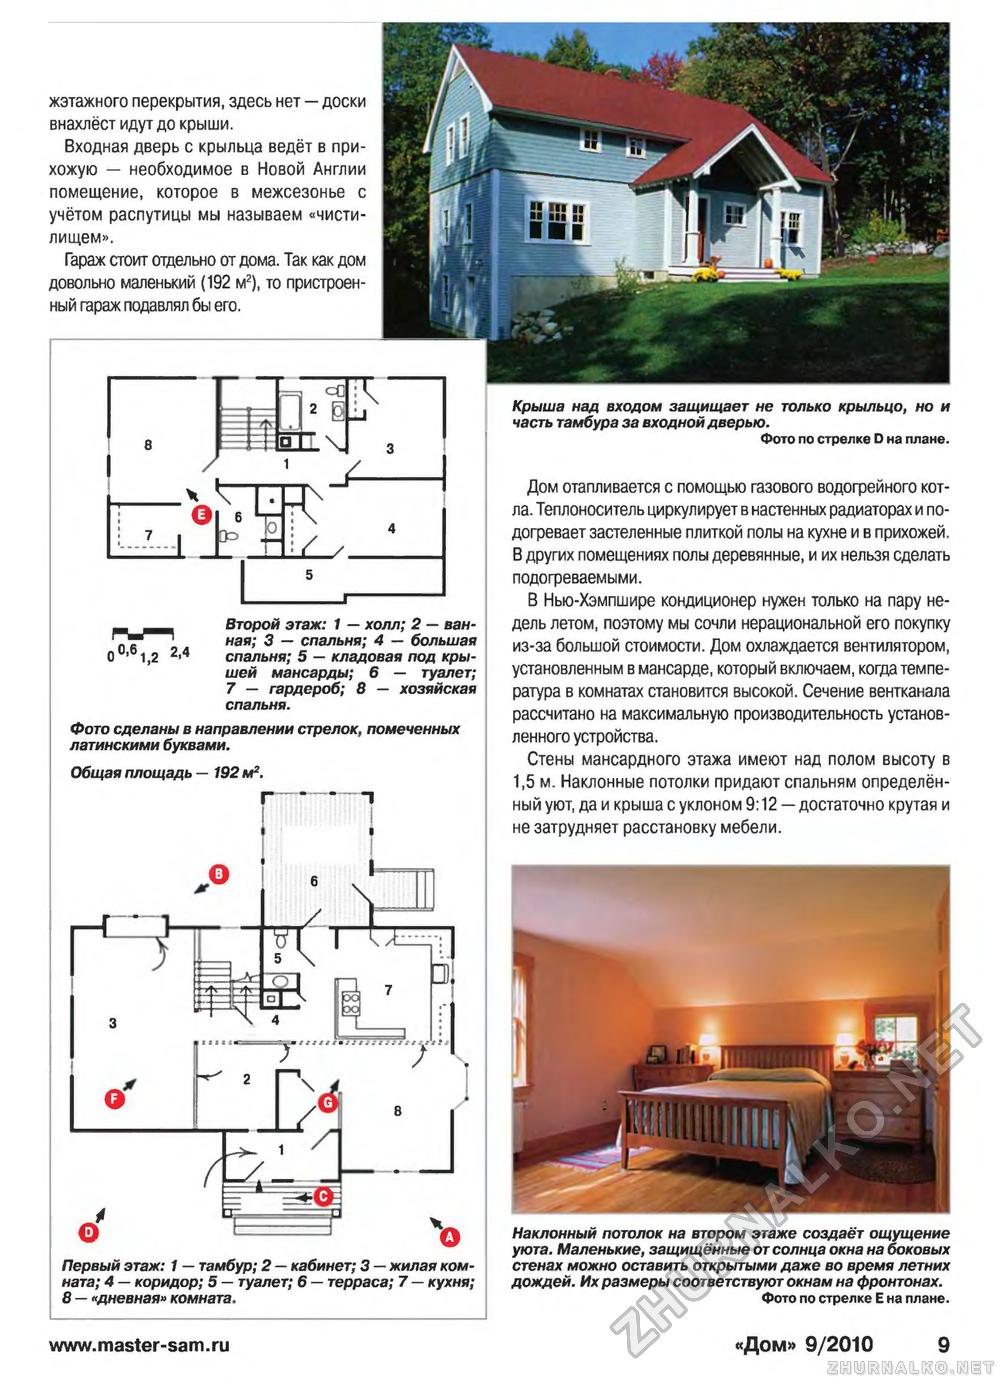 Дом 2010-09, страница 9